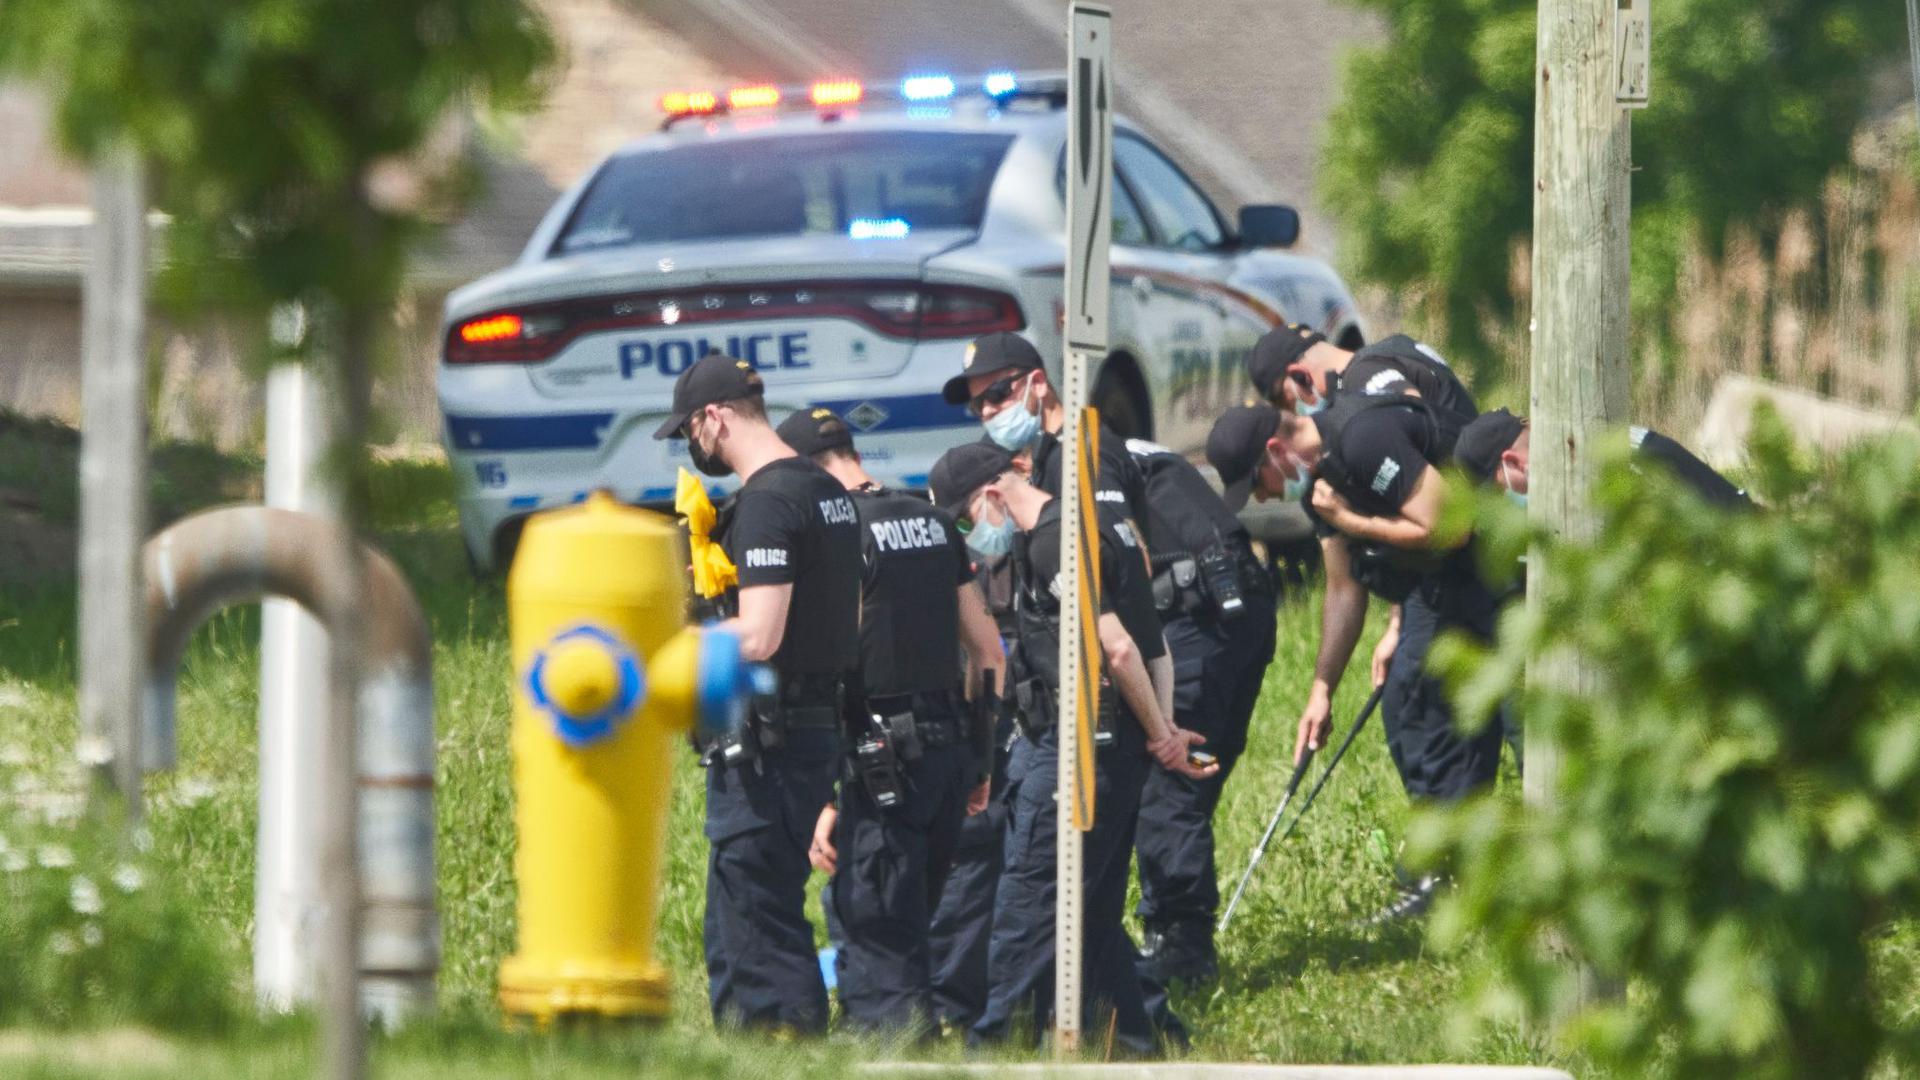 Polizisten in Reihe untersuchen den Tatort eines Autounfalls in London, Ontario. Nach einem Angriff mit einem Auto, bei dem vier Menschen aus einer muslimischen Familie getötet worden sind, geht die Polizei Berichten zufolge von einem rassistischen Tatmotiv aus.